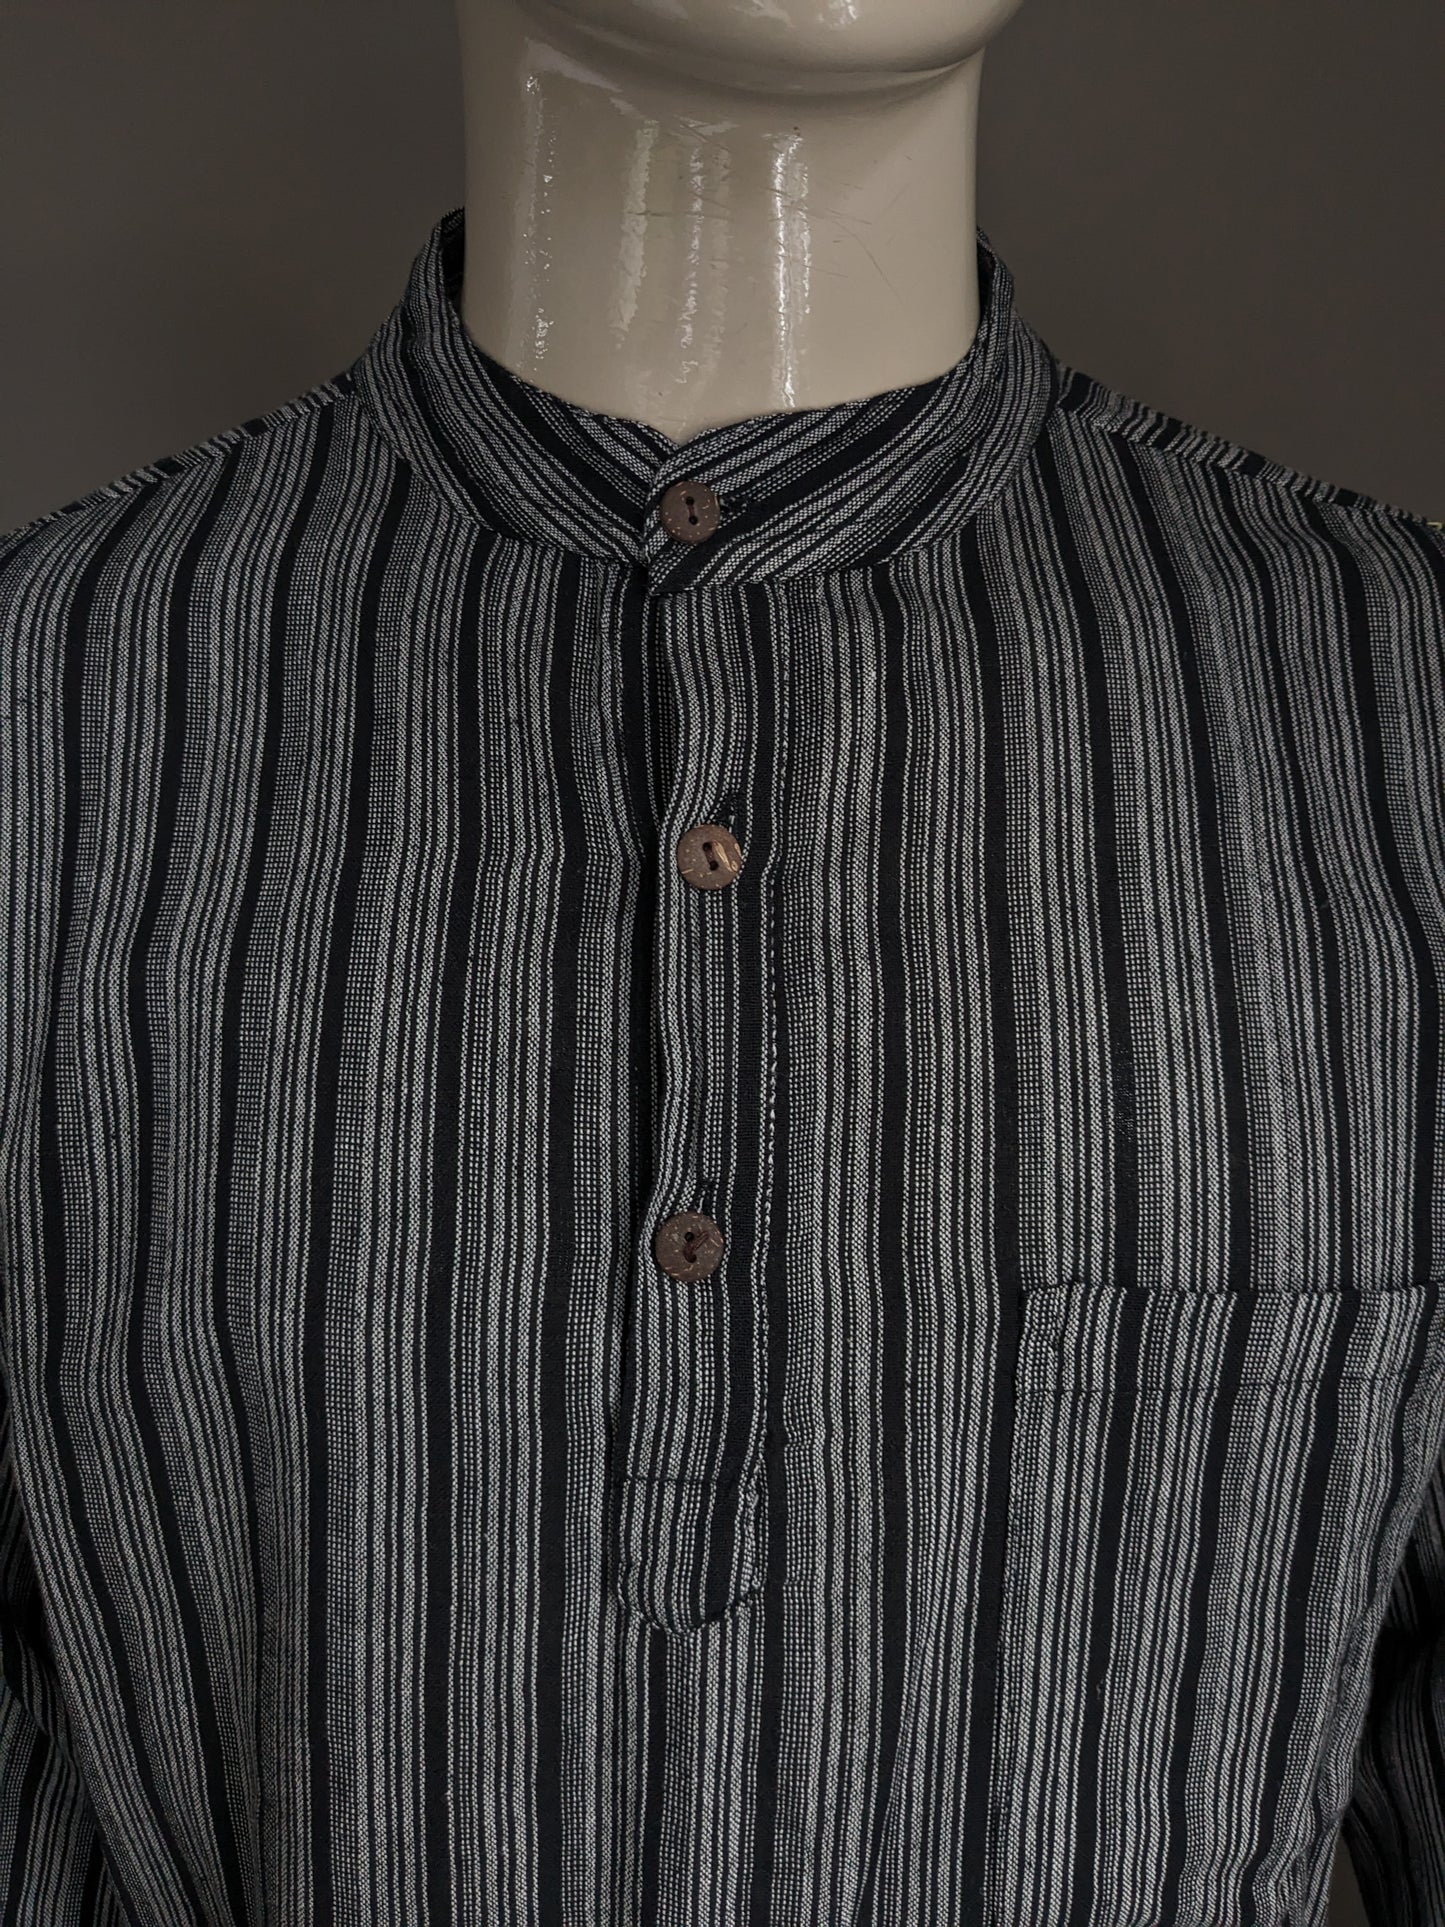 Pull / chemise / chemise vintage Yuli Polo avec collier surélevé / agriculteurs / mao. Gris noir rayé de sac. Taille xl.